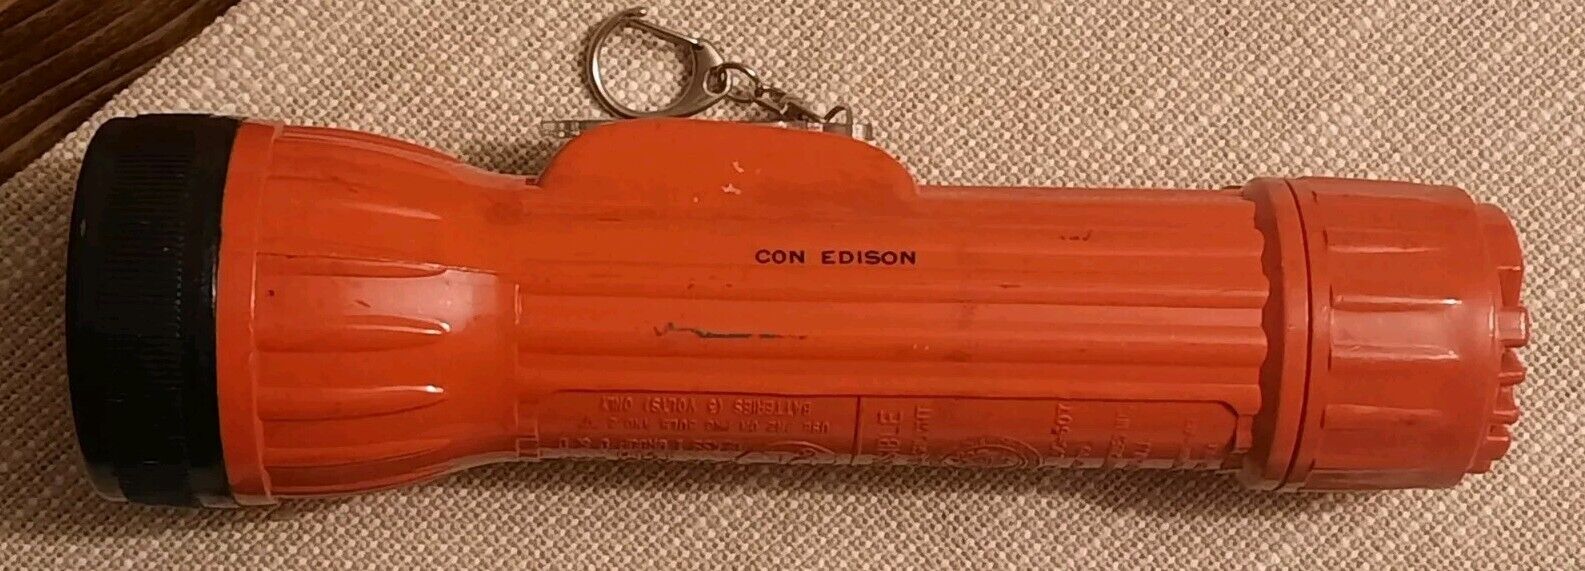 Consolidated Edison Con Ed Bright Star Orange Flashlight